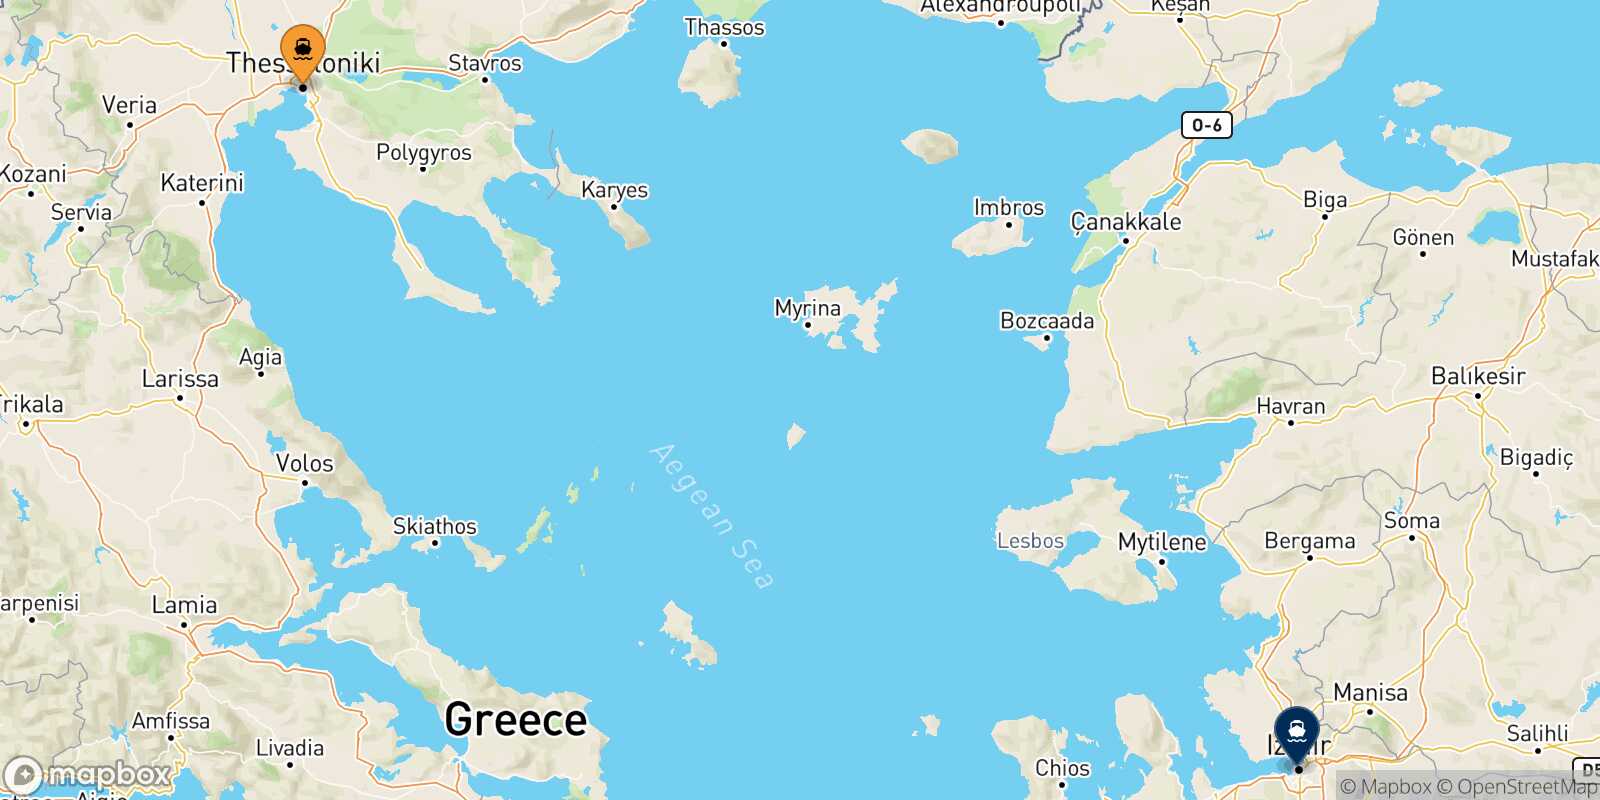 Mappa delle destinazioni raggiungibili da Salonicco